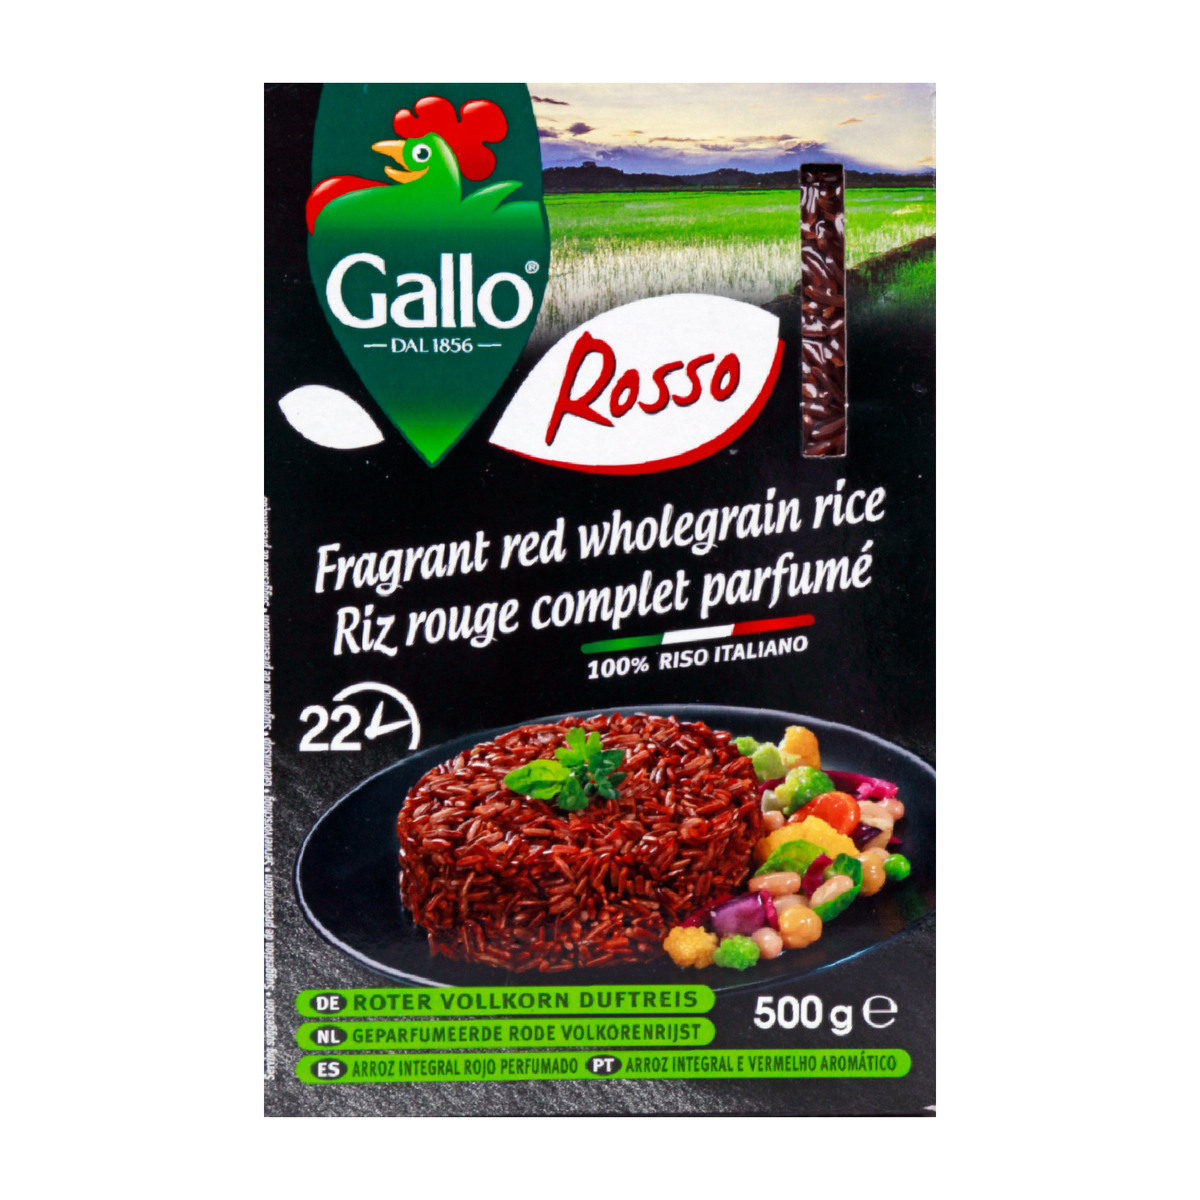 Riso Gallo Rosso Fragrant Red Wholegrain Rice 500g